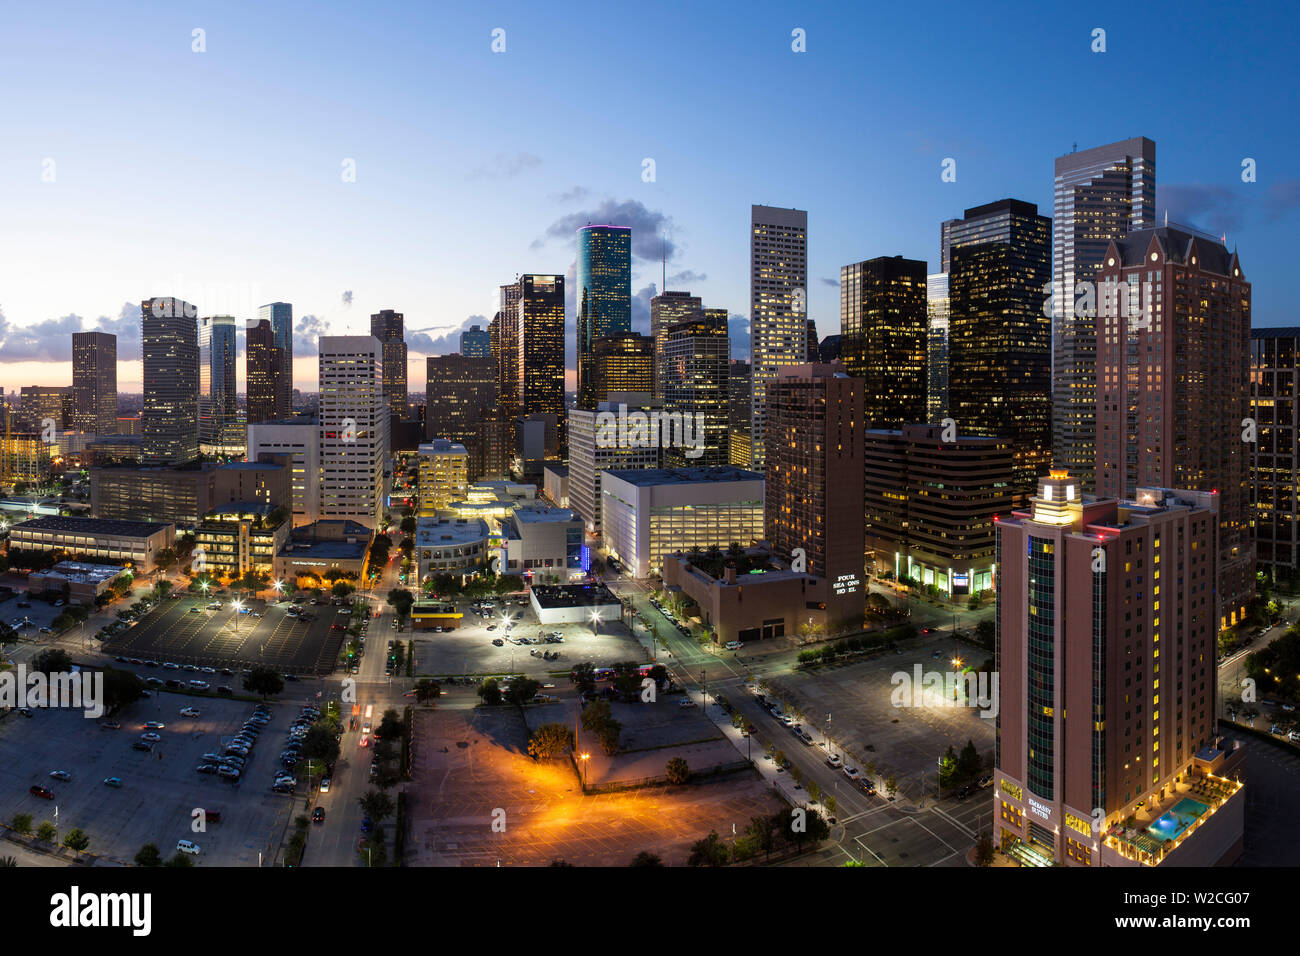 El centro de la Ciudad de Houston, Texas, EE.UU. Foto de stock